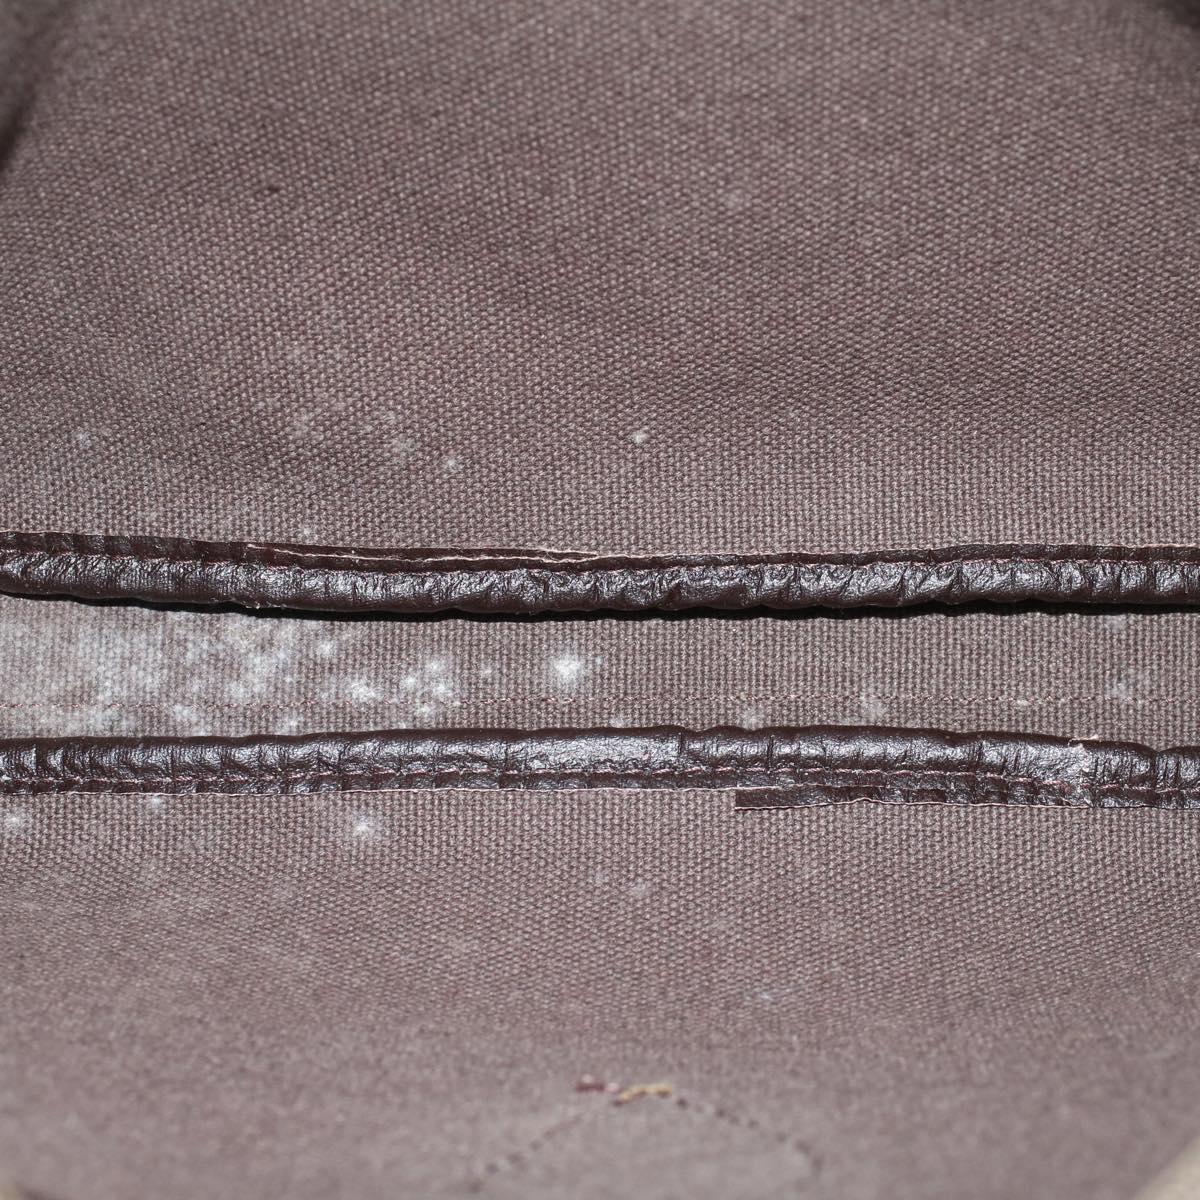 SAINT LAURENT Clutch Bag PVC Leather Gray Auth bs7990